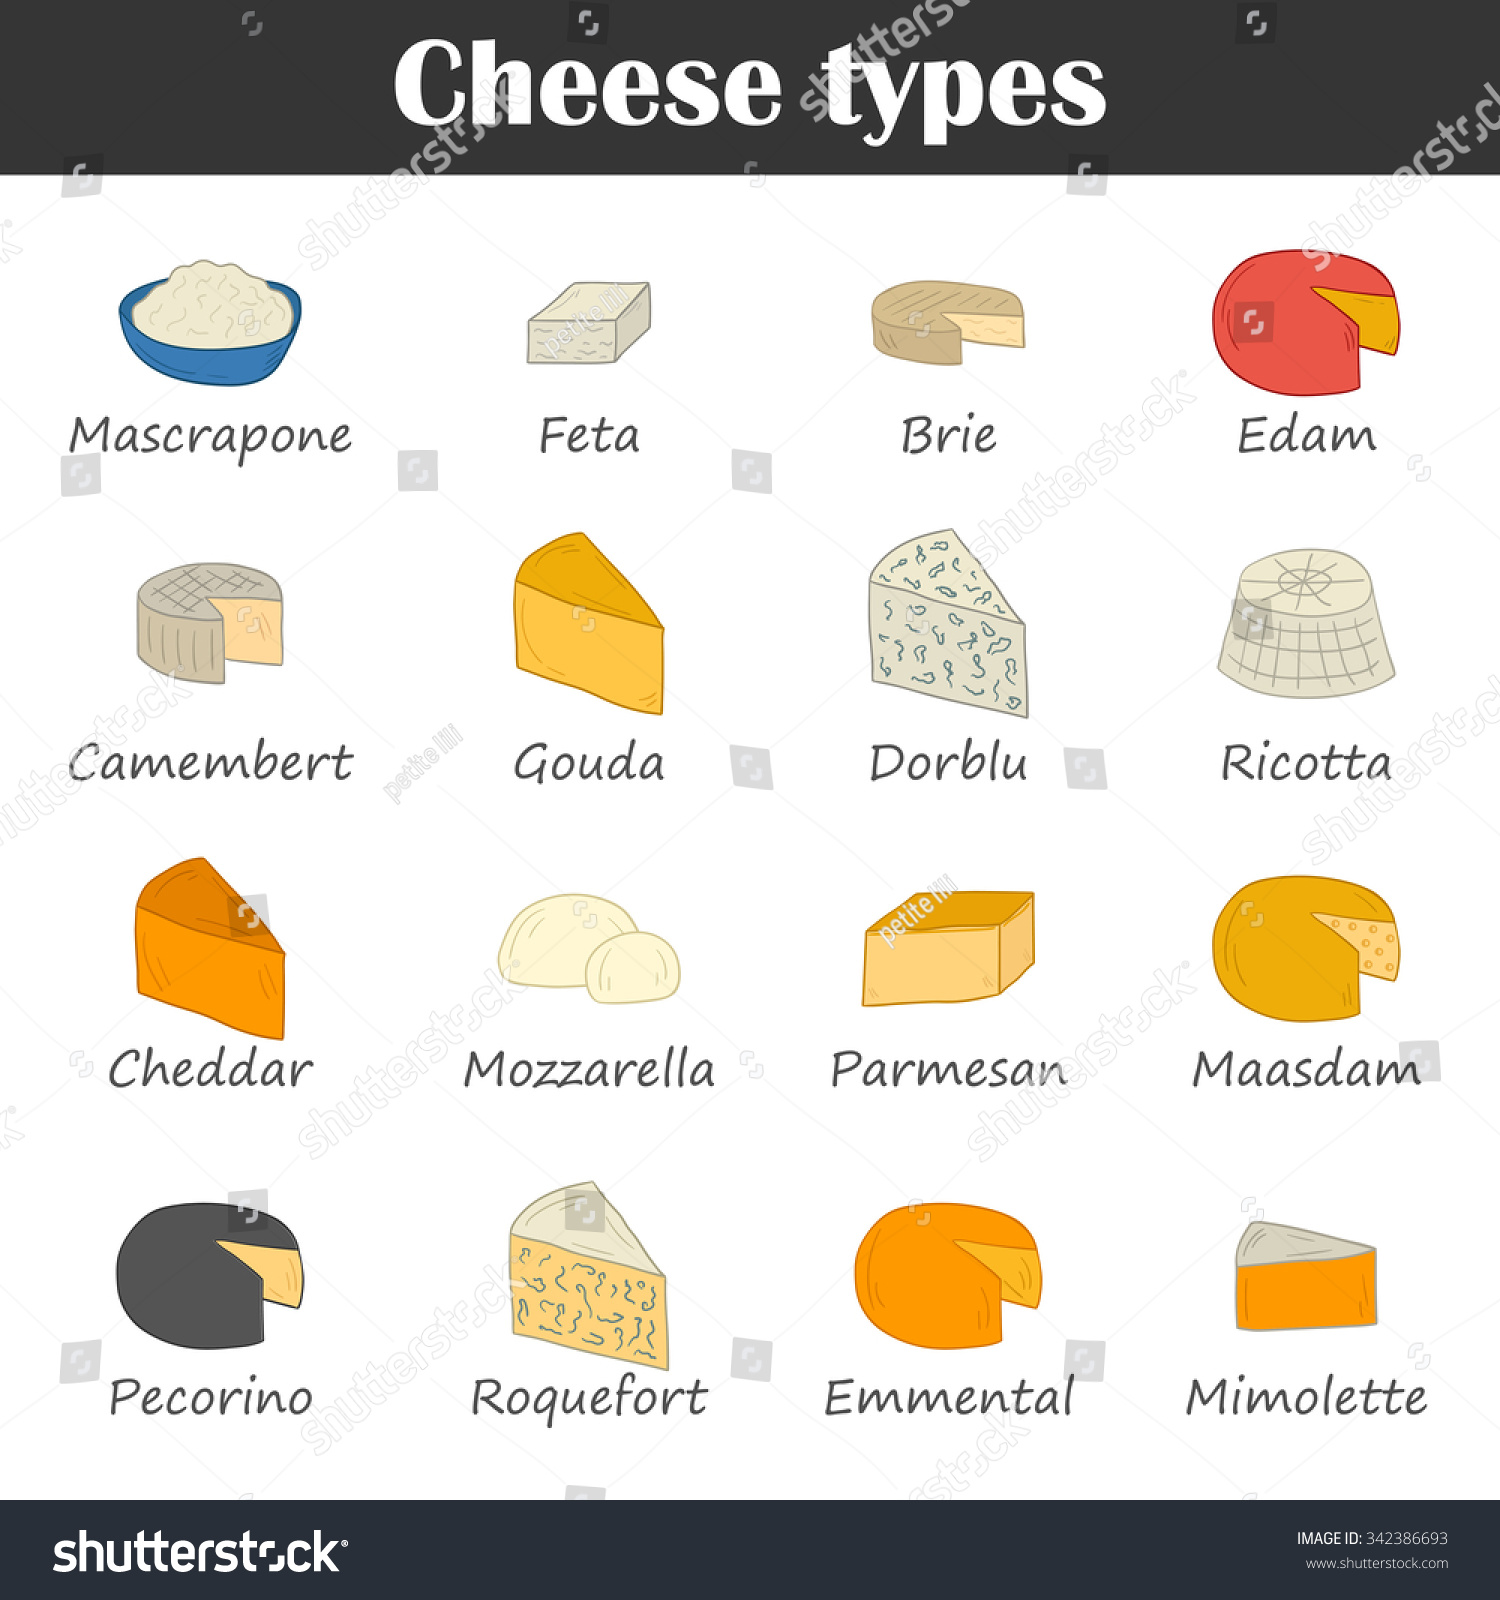 Виды сыра на английском